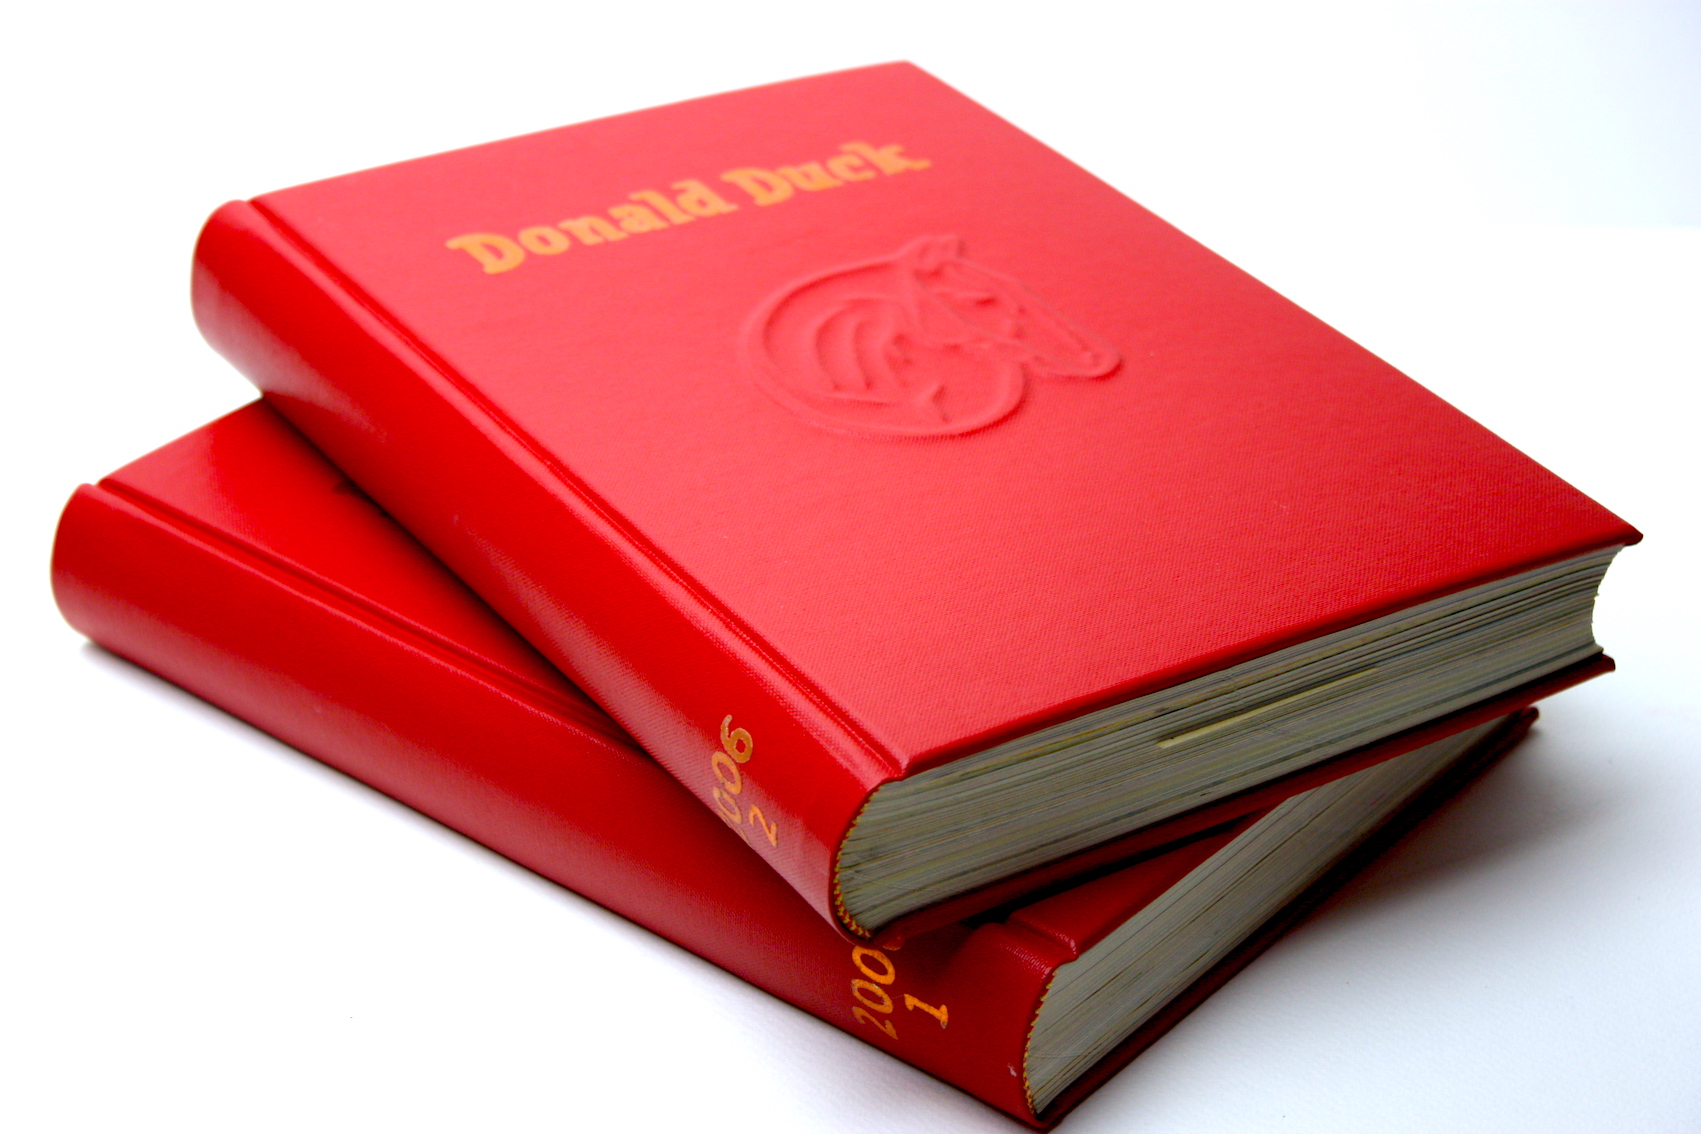 Ingebonden jaargang Donald Duck, buckram, rood, preeg, familielogo, boek, boekbinden, handgemaakt